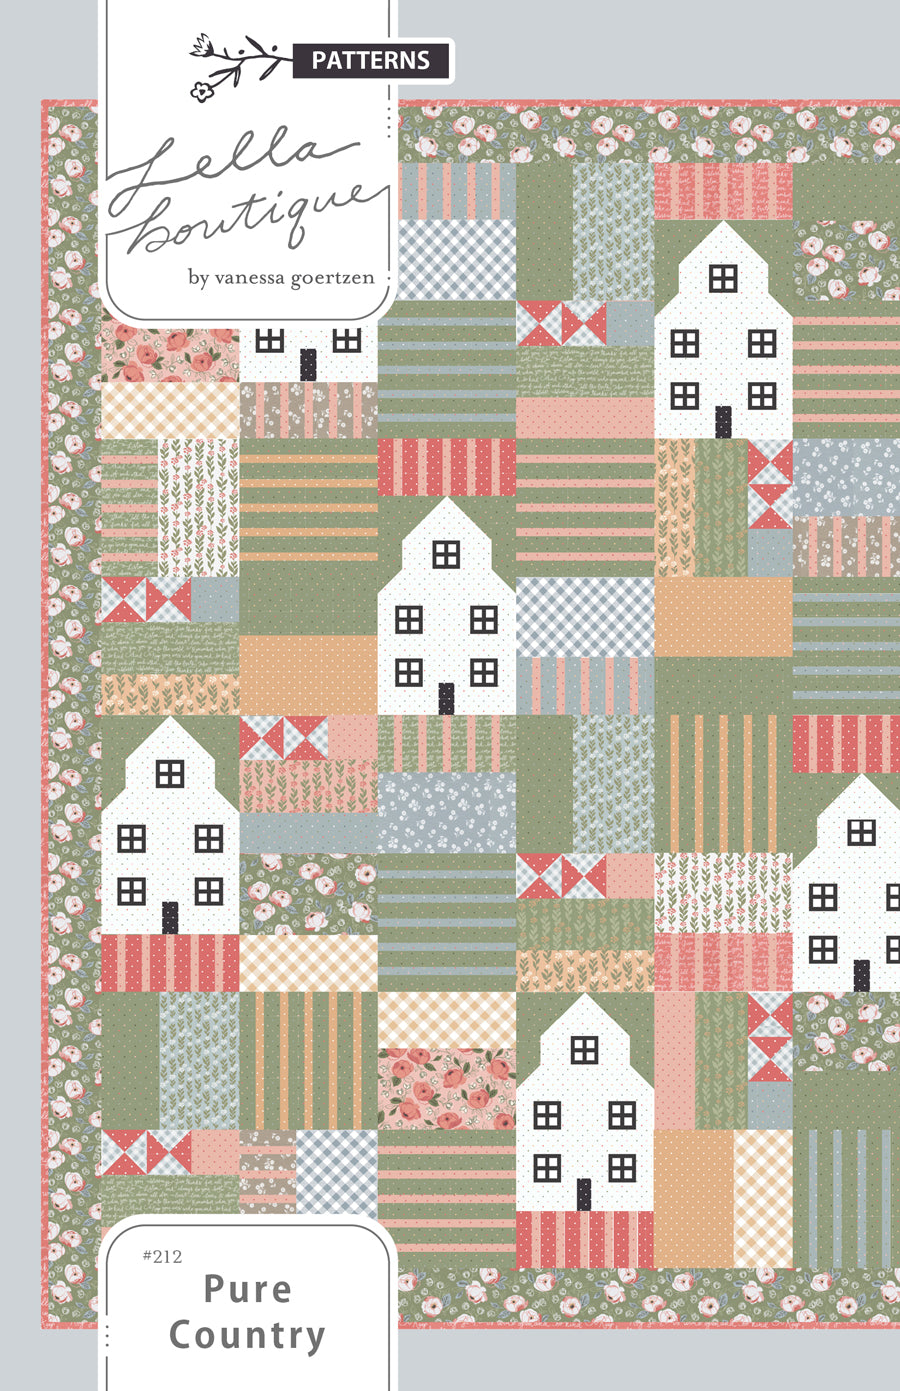 Pure Country farm Quilt PDF pattern Lella Boutique